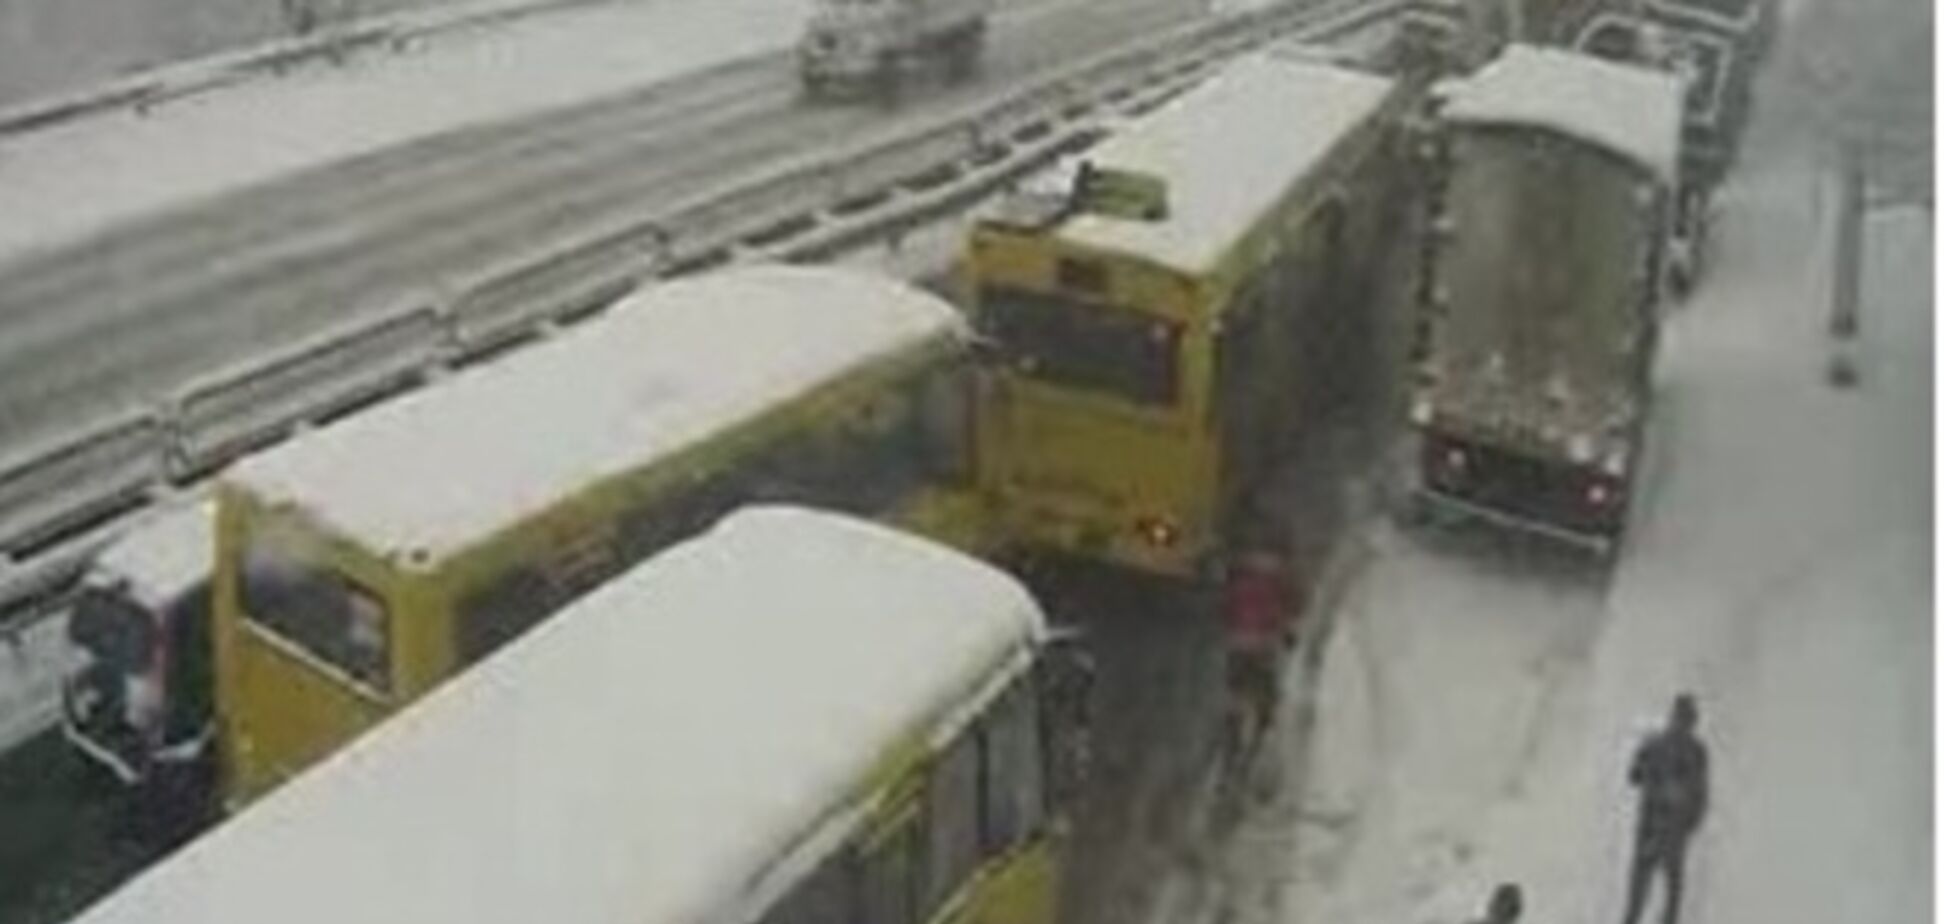 Из-за снегопада в Киеве утром произошло около 40 ДТП